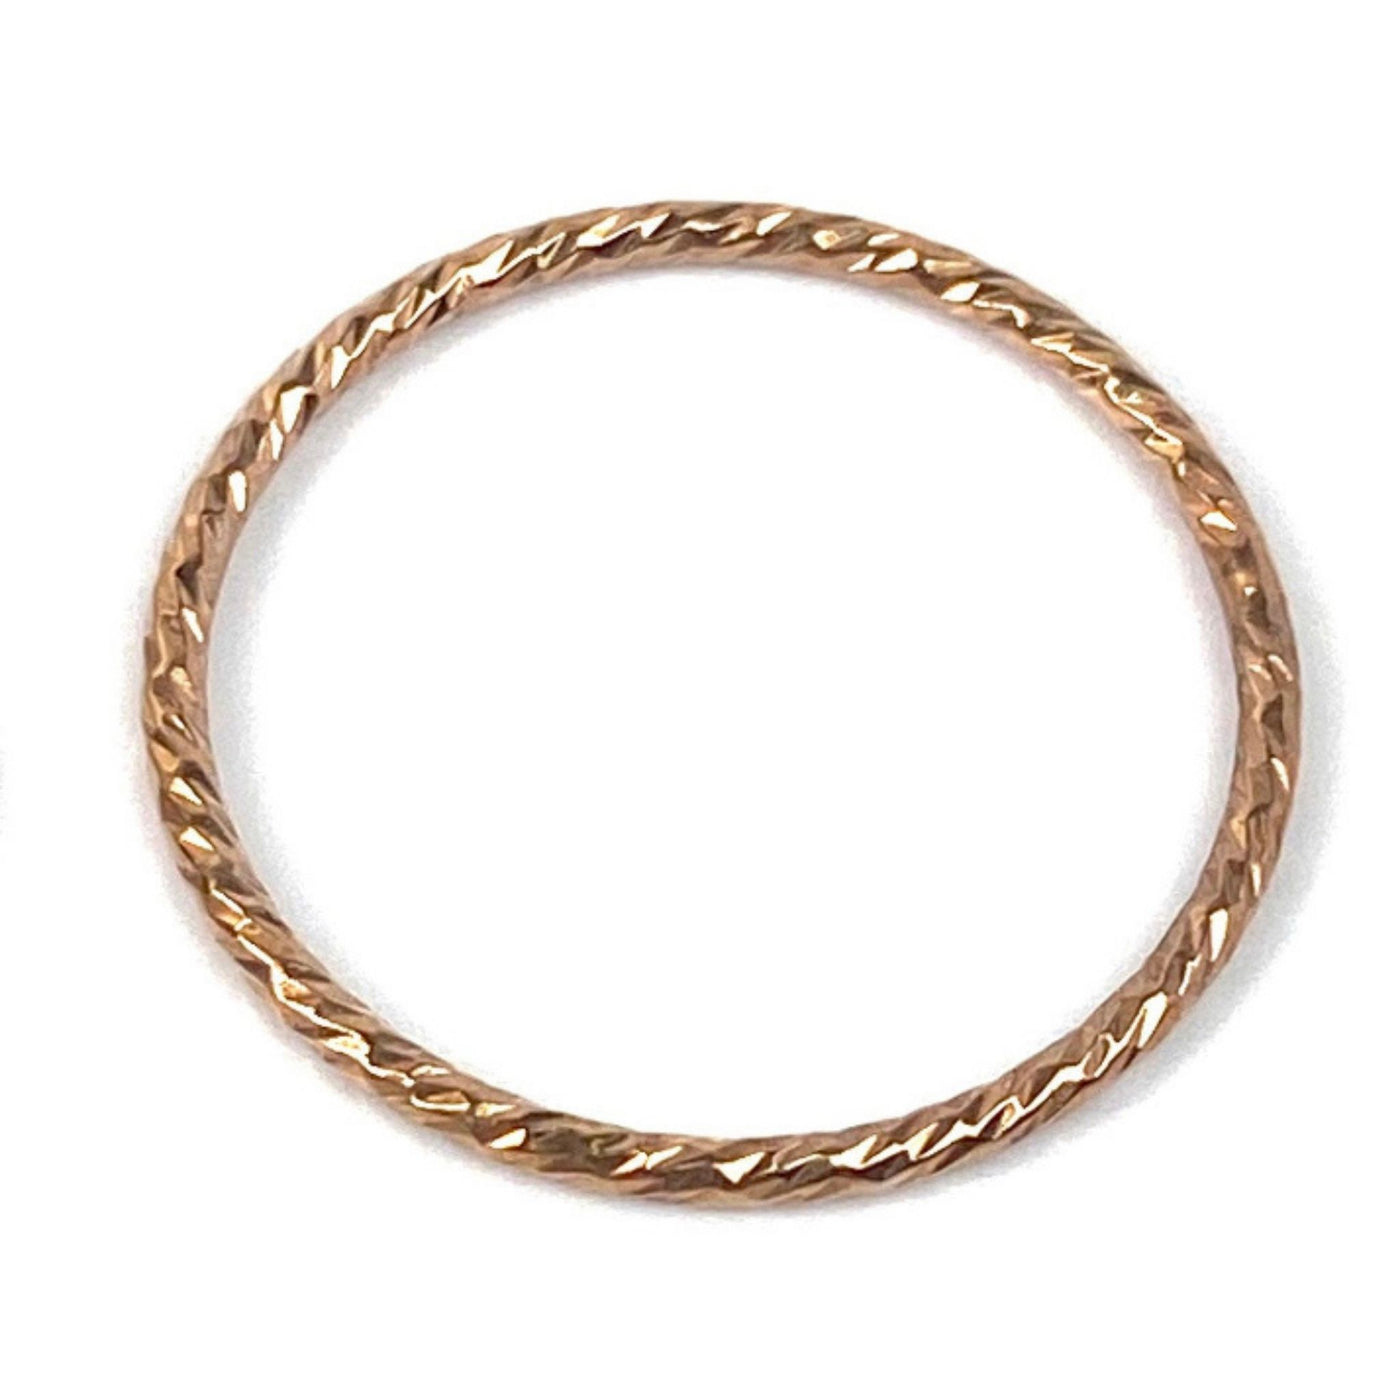 Rose Gold Filled Sparkle Ring